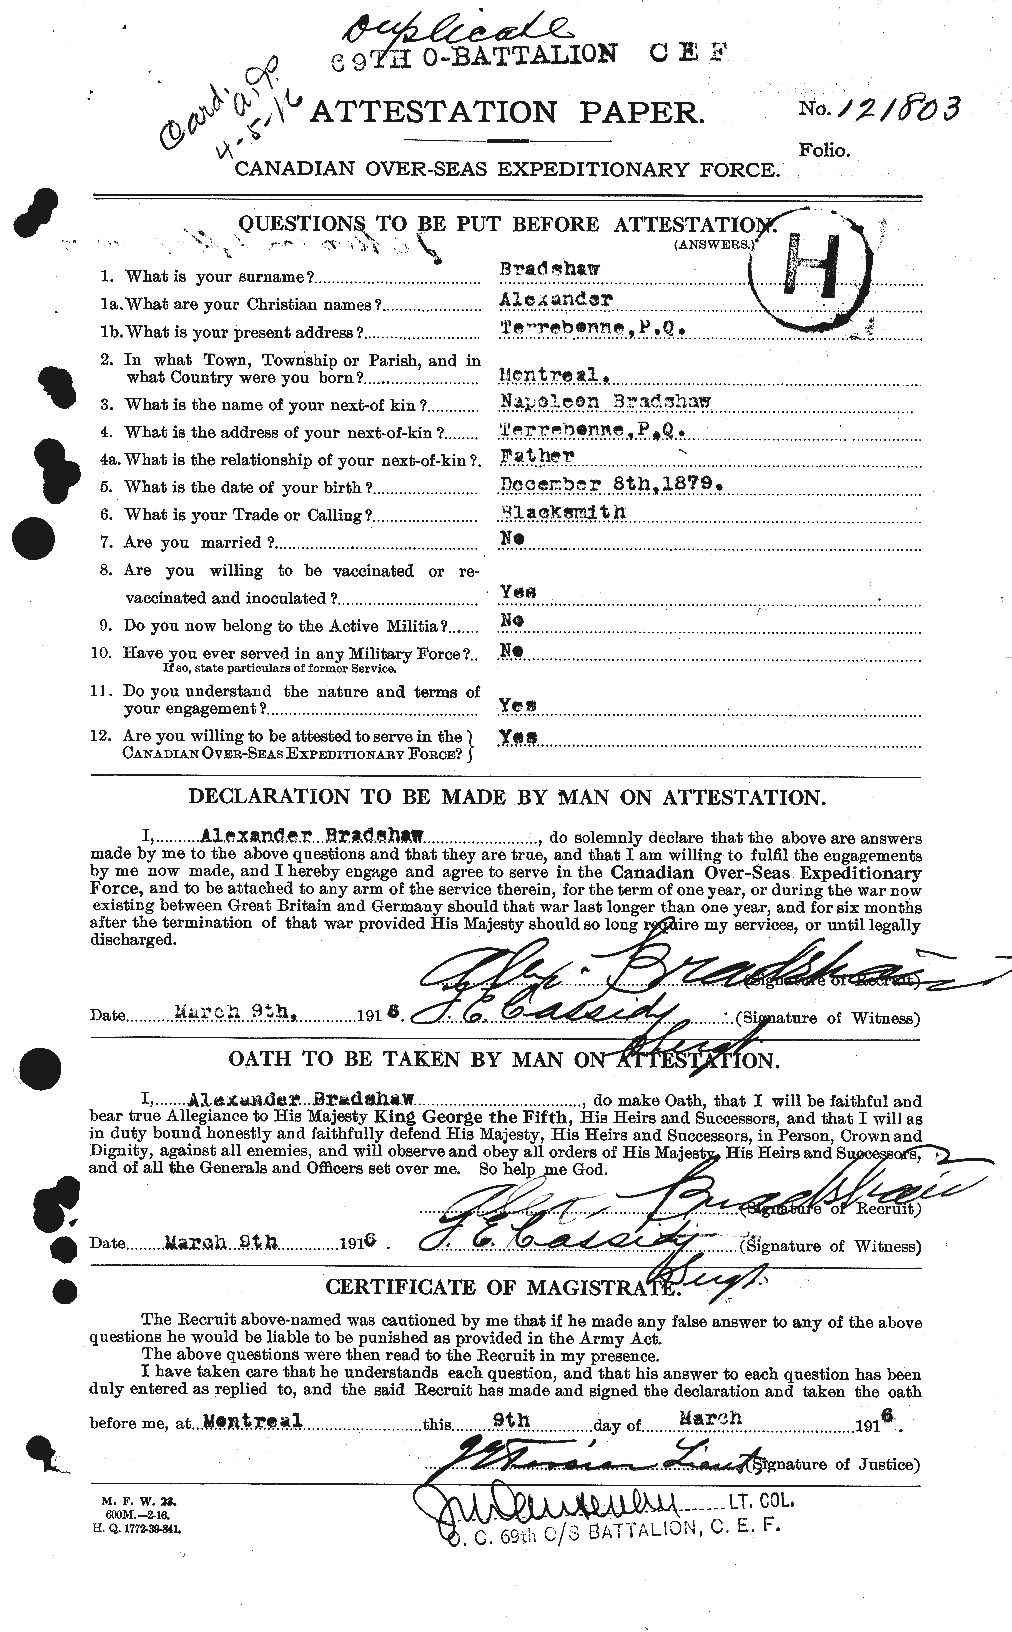 Dossiers du Personnel de la Première Guerre mondiale - CEC 256583a